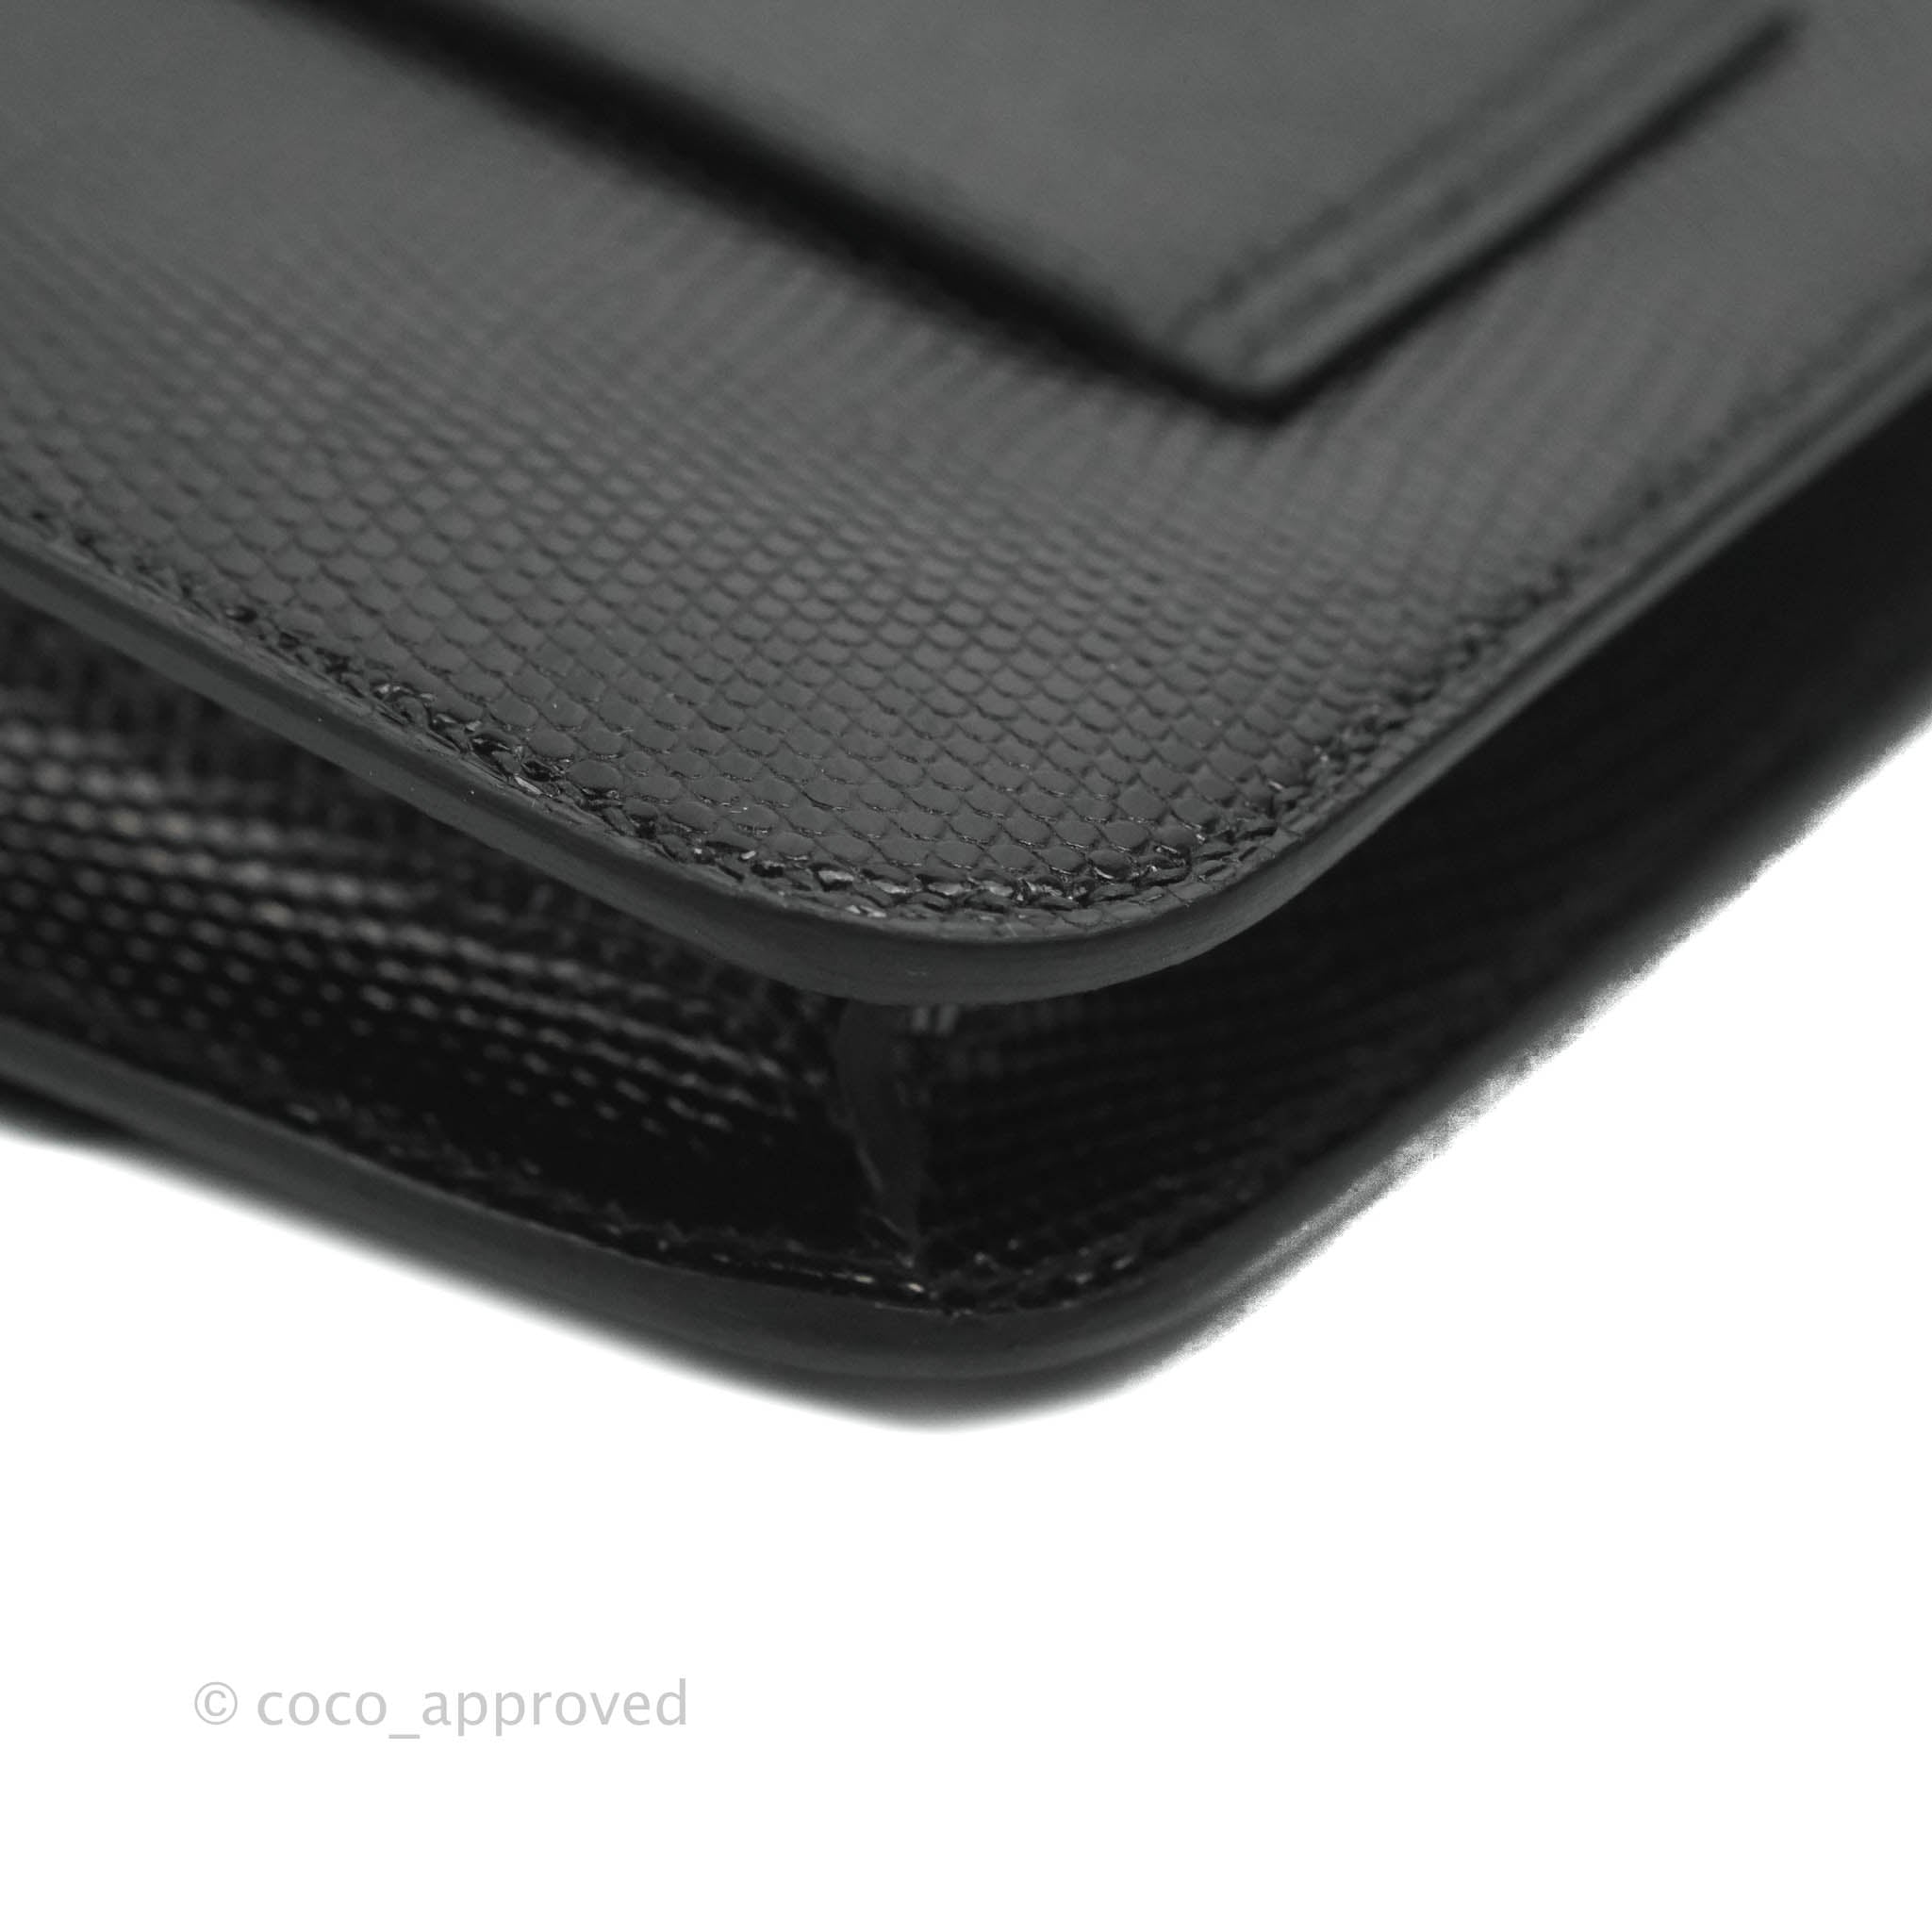 Hermes Constance Slim Wallet Waist Belt Bag Black Rose Gold Hardware –  Mightychic